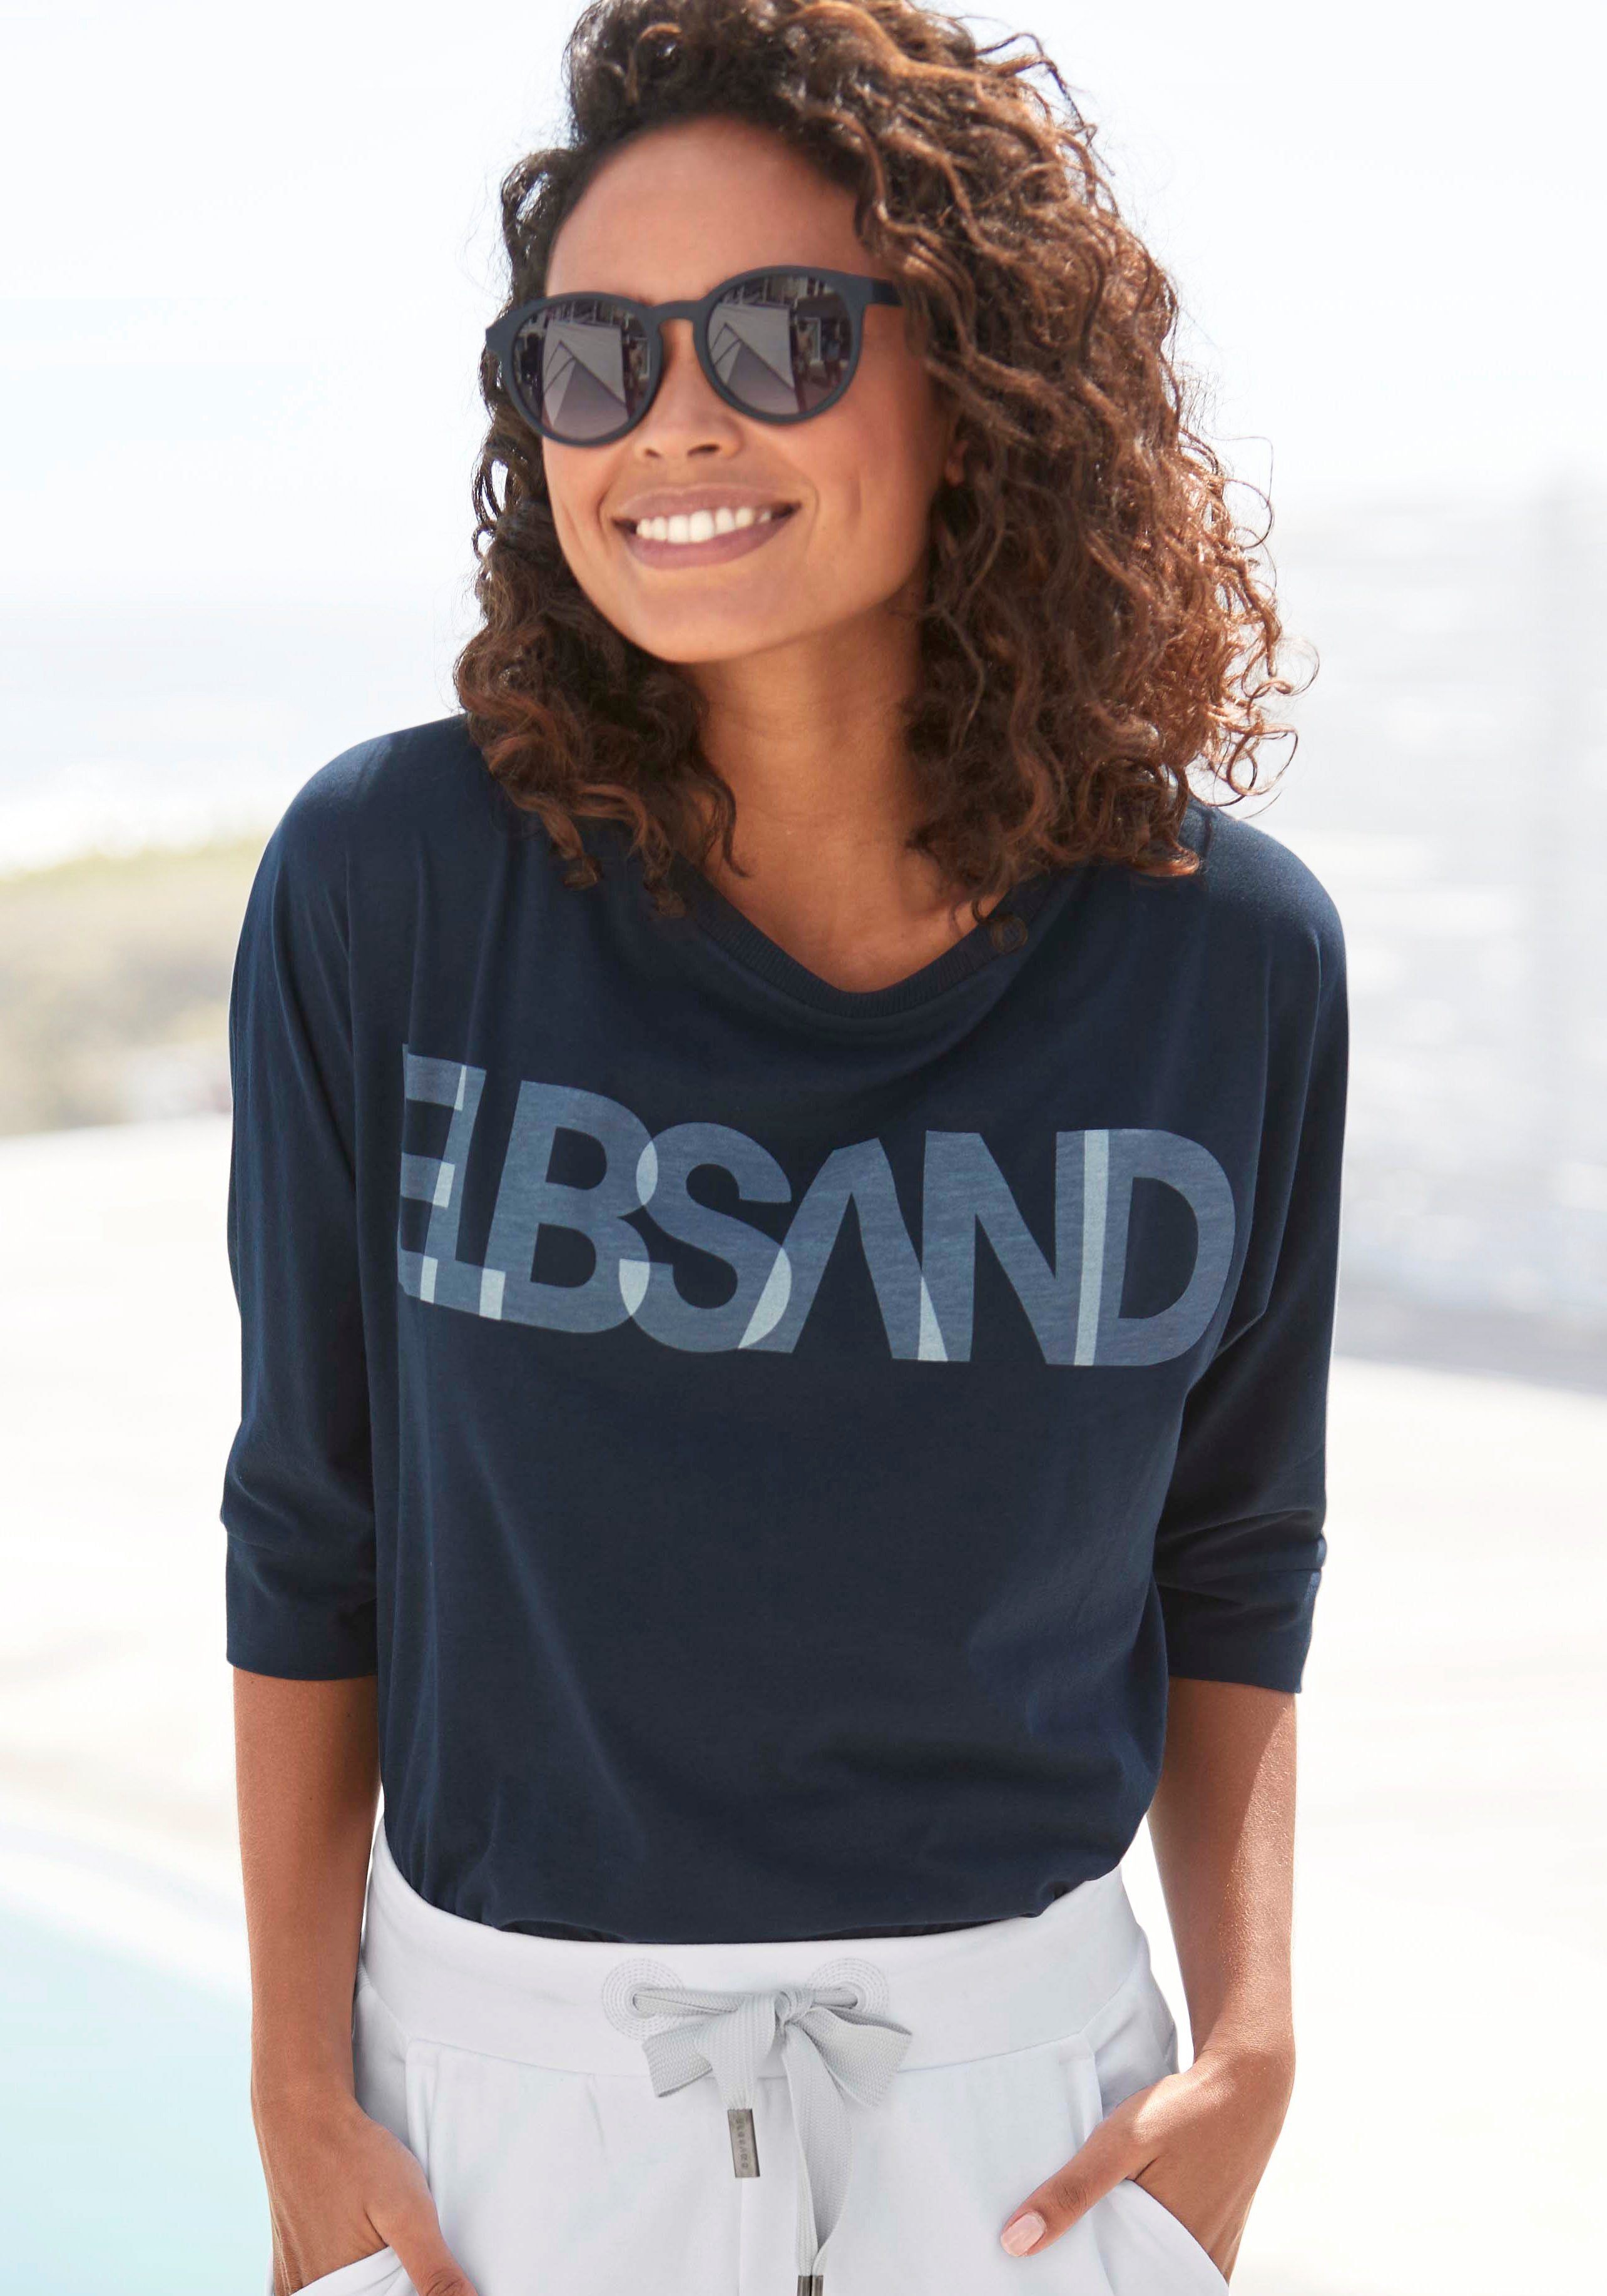 Elbsand 3/4-Arm-Shirt mit Logodruck, lockere Passform Baumwoll-Mix, coldwater